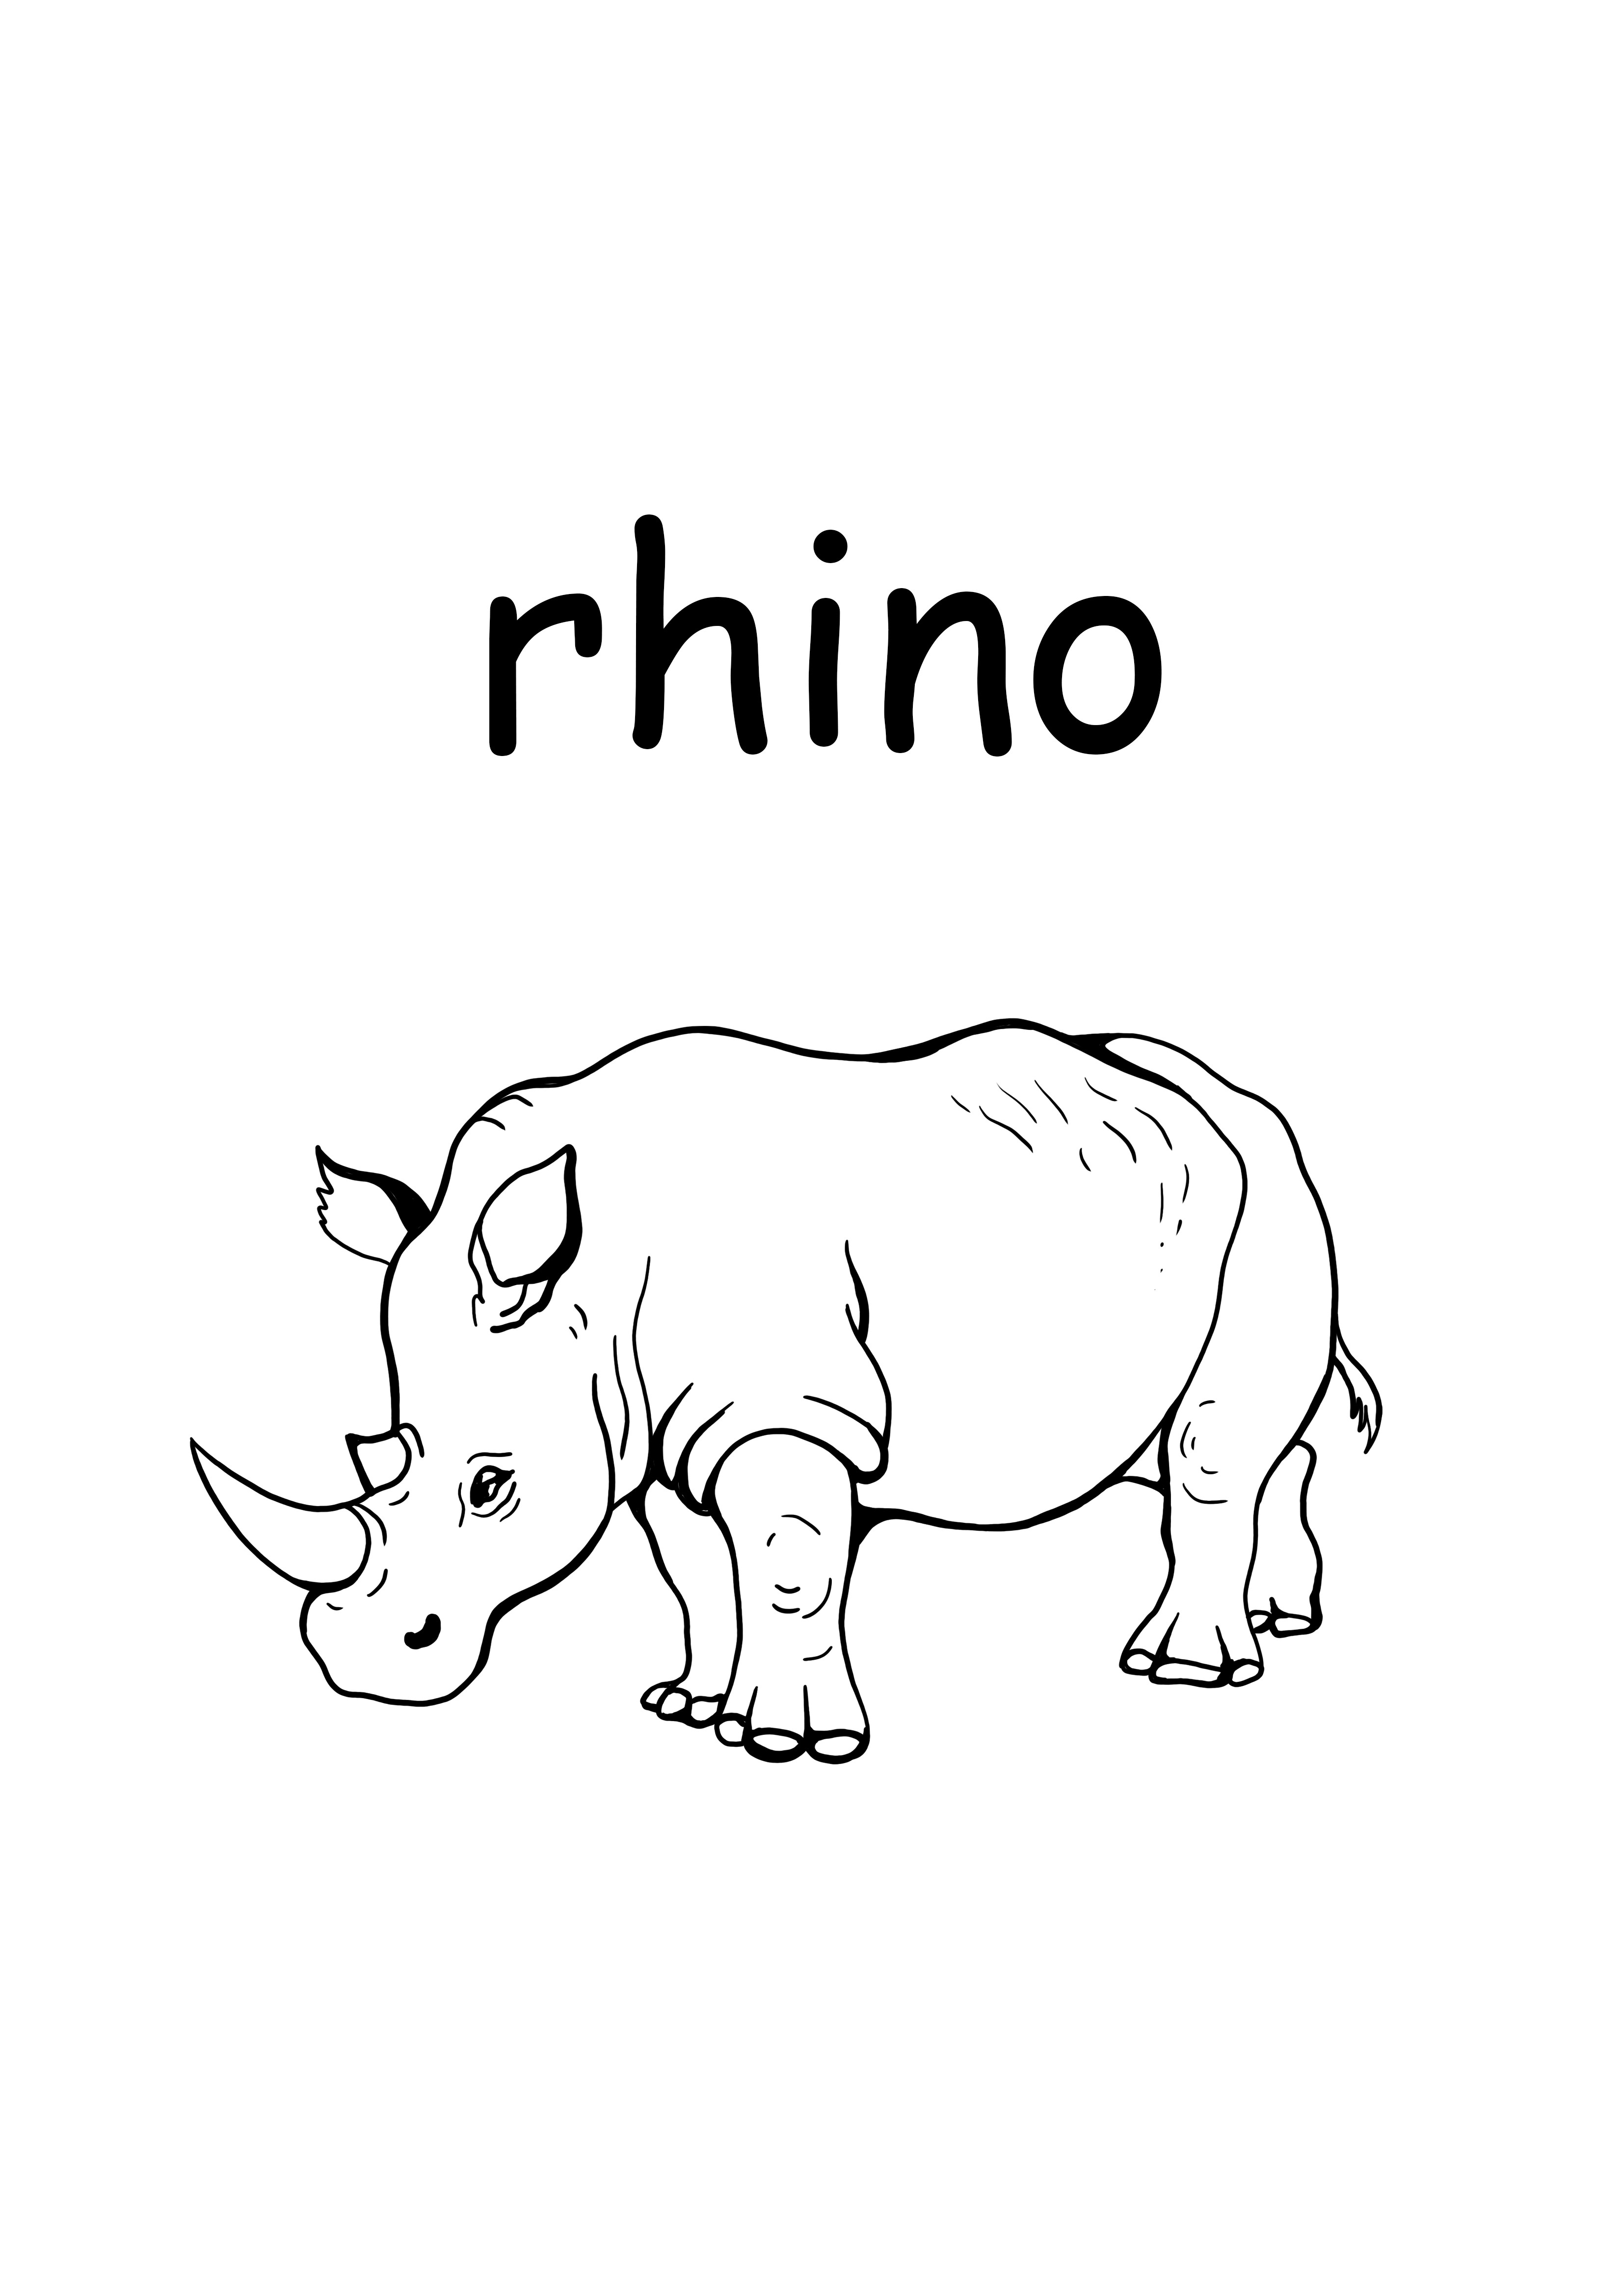 r para rinoceronte palabra minúscula página para colorear gratis